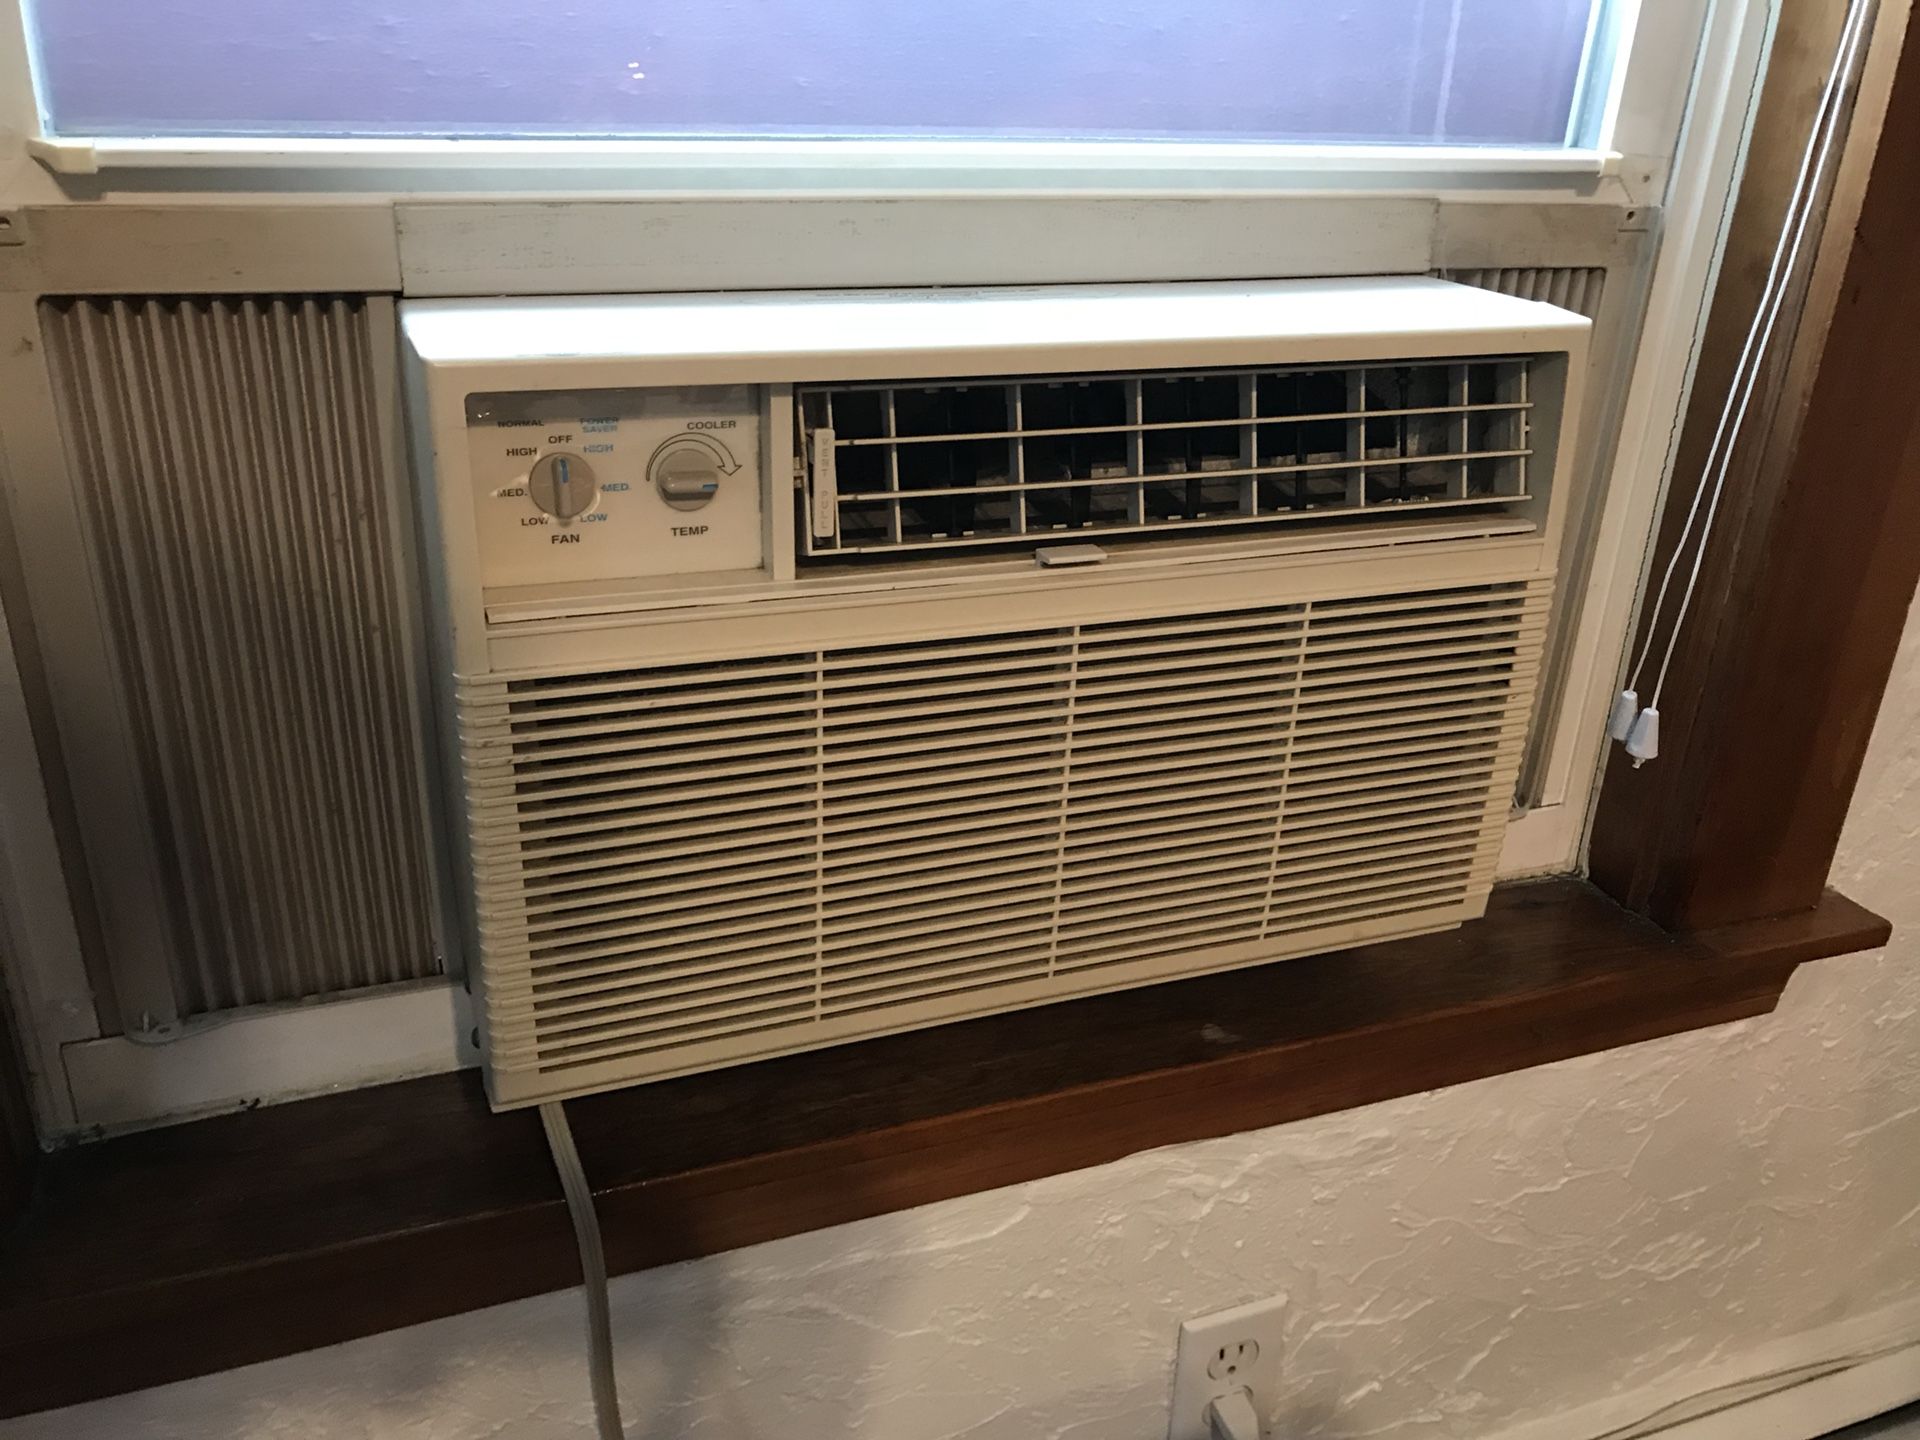 5450 BTU air conditioner